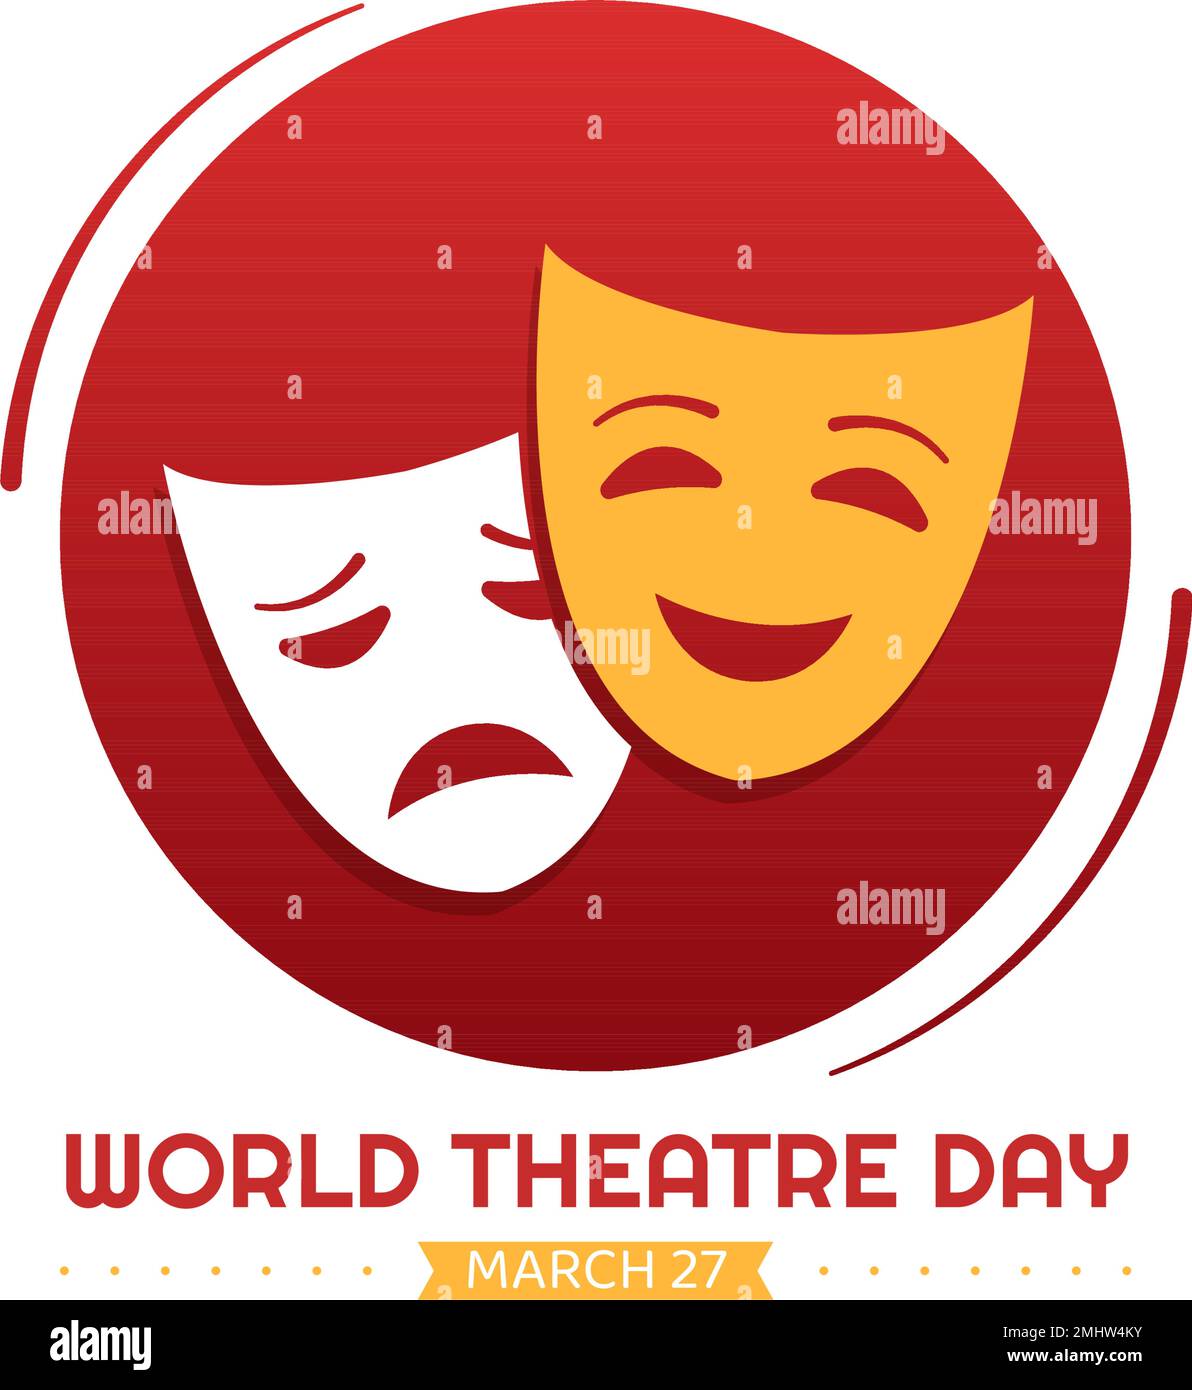 Journée mondiale du théâtre sur l'illustration 27 mars avec masques et pour célébrer le théâtre pour la bannière Web ou la page d'arrivée dans le dessin animé à la main de dessin animé à plat de dessin animé Illustration de Vecteur